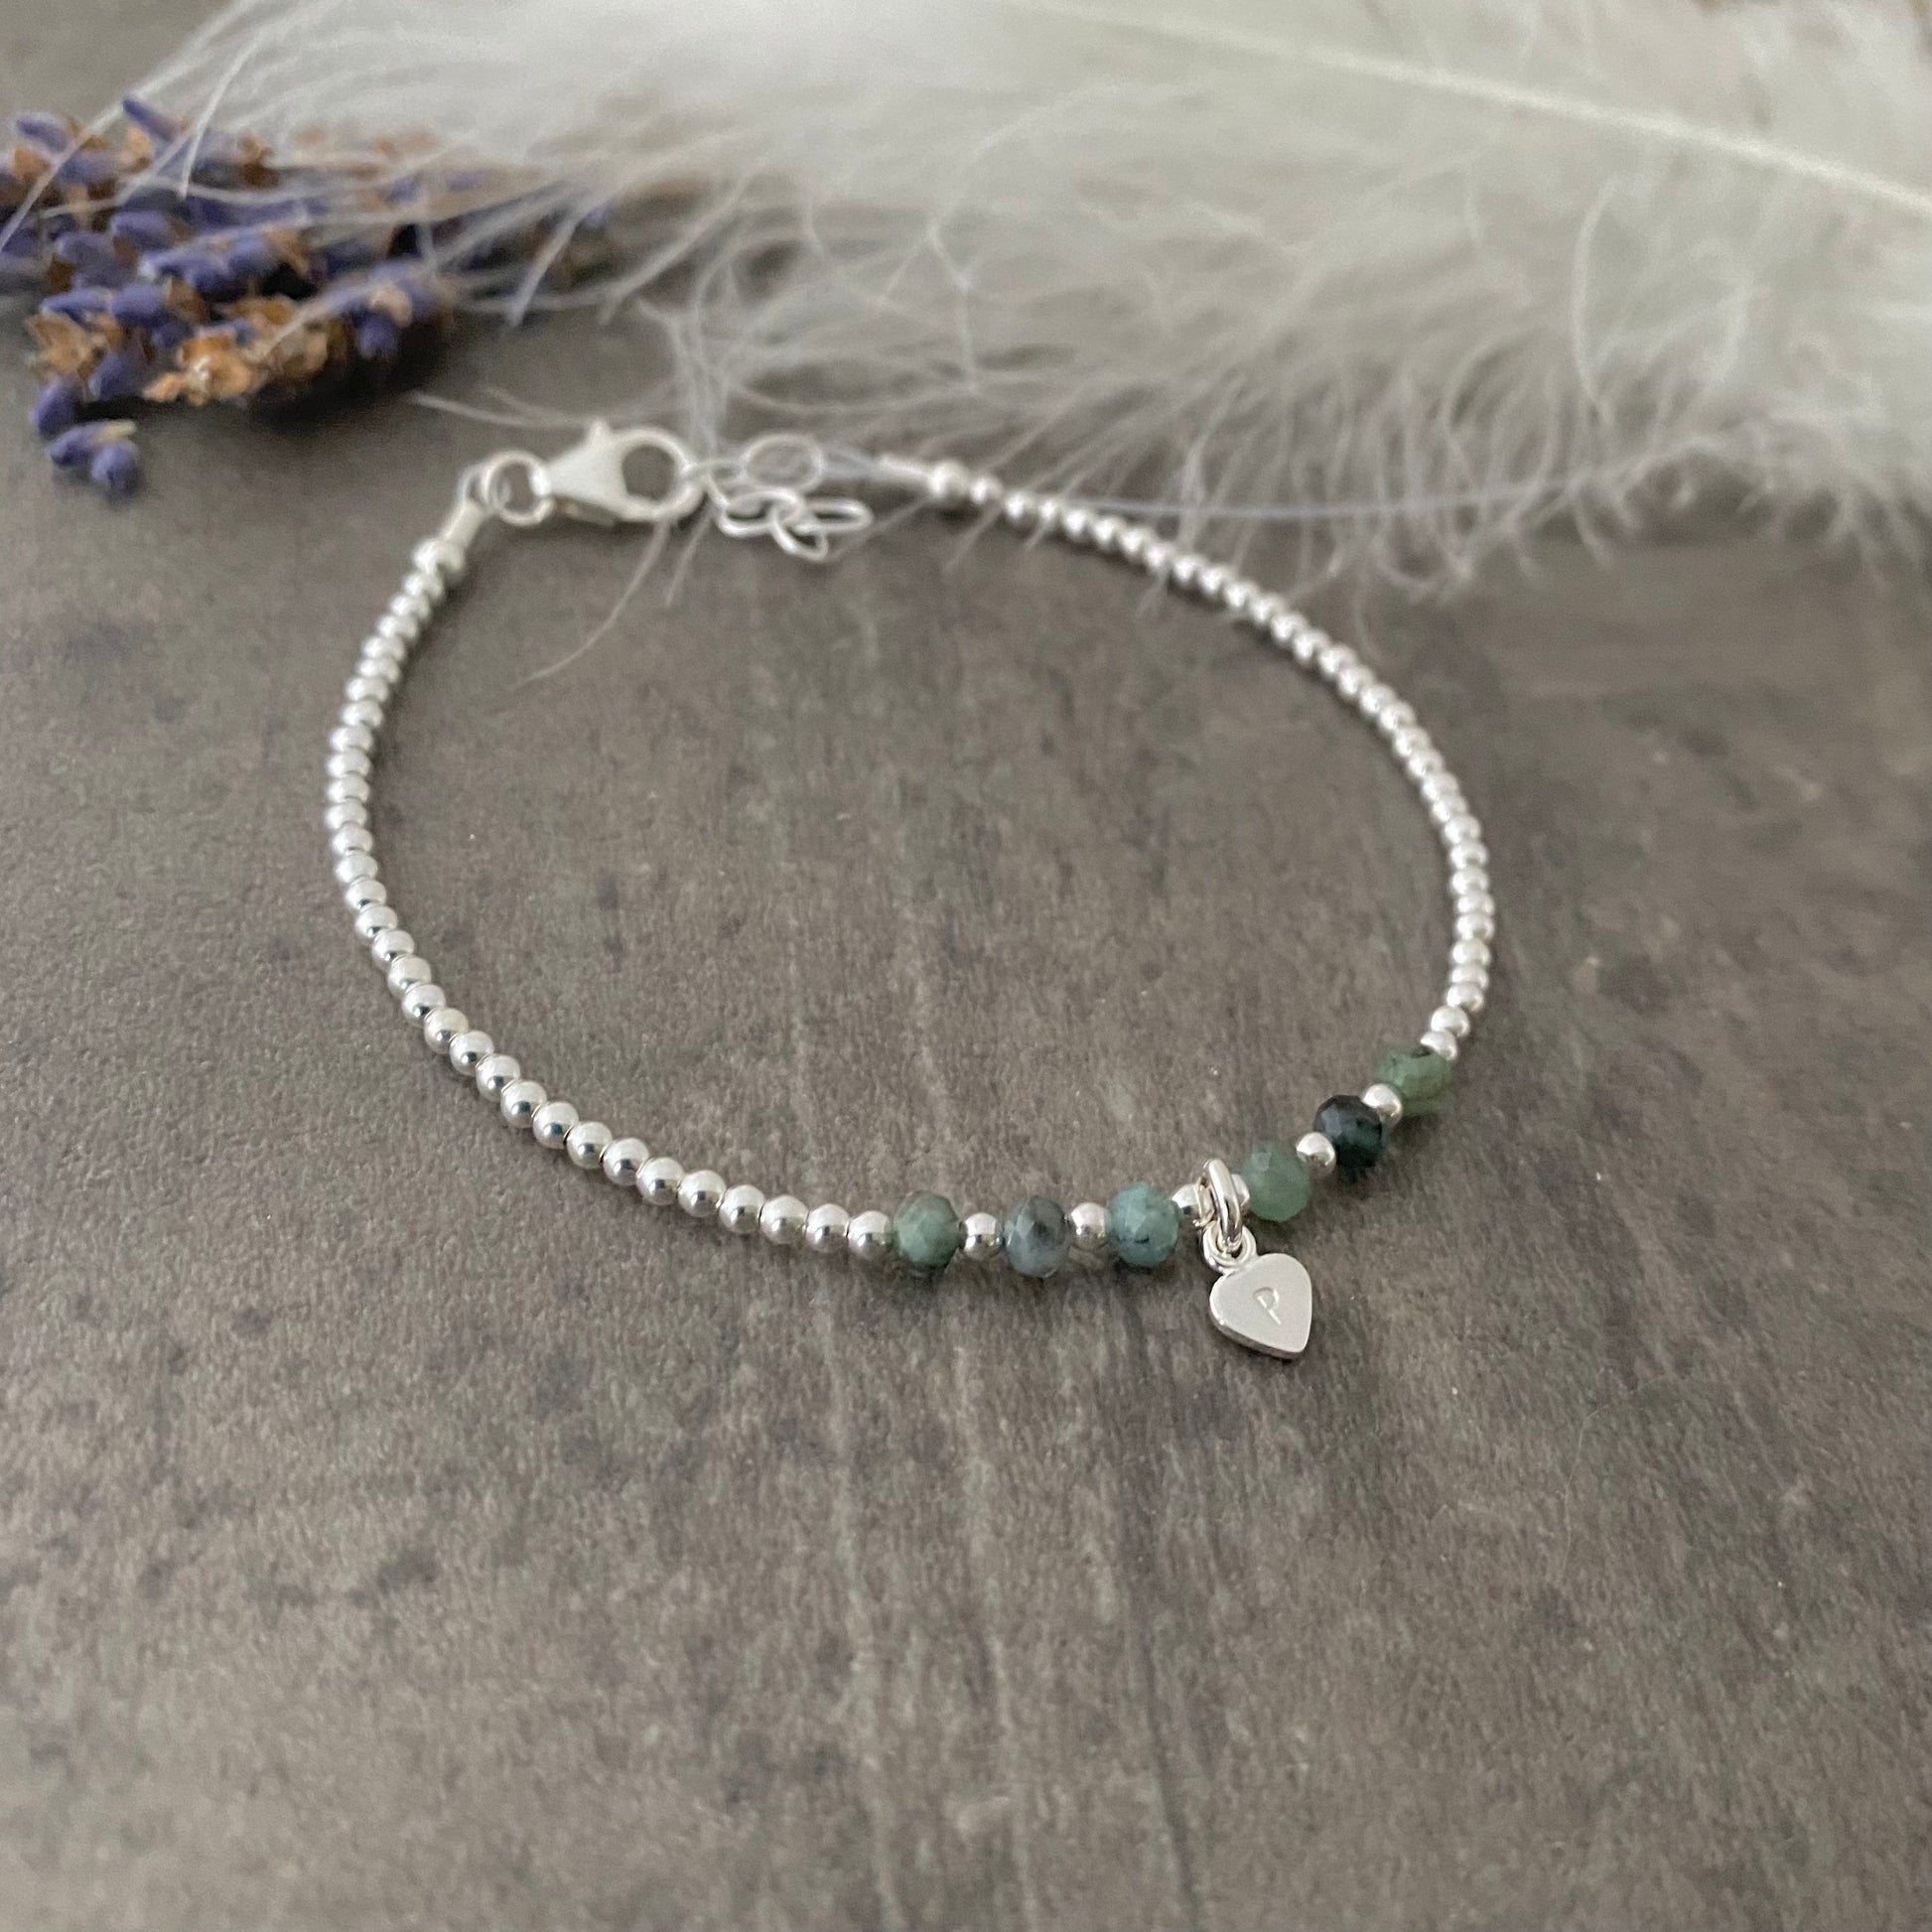 Personalised Emerald Bracelet, Dainty May Birthstone Jewellery in Sterling Silver, Initial Bracelet, Silver Bracelets for Women